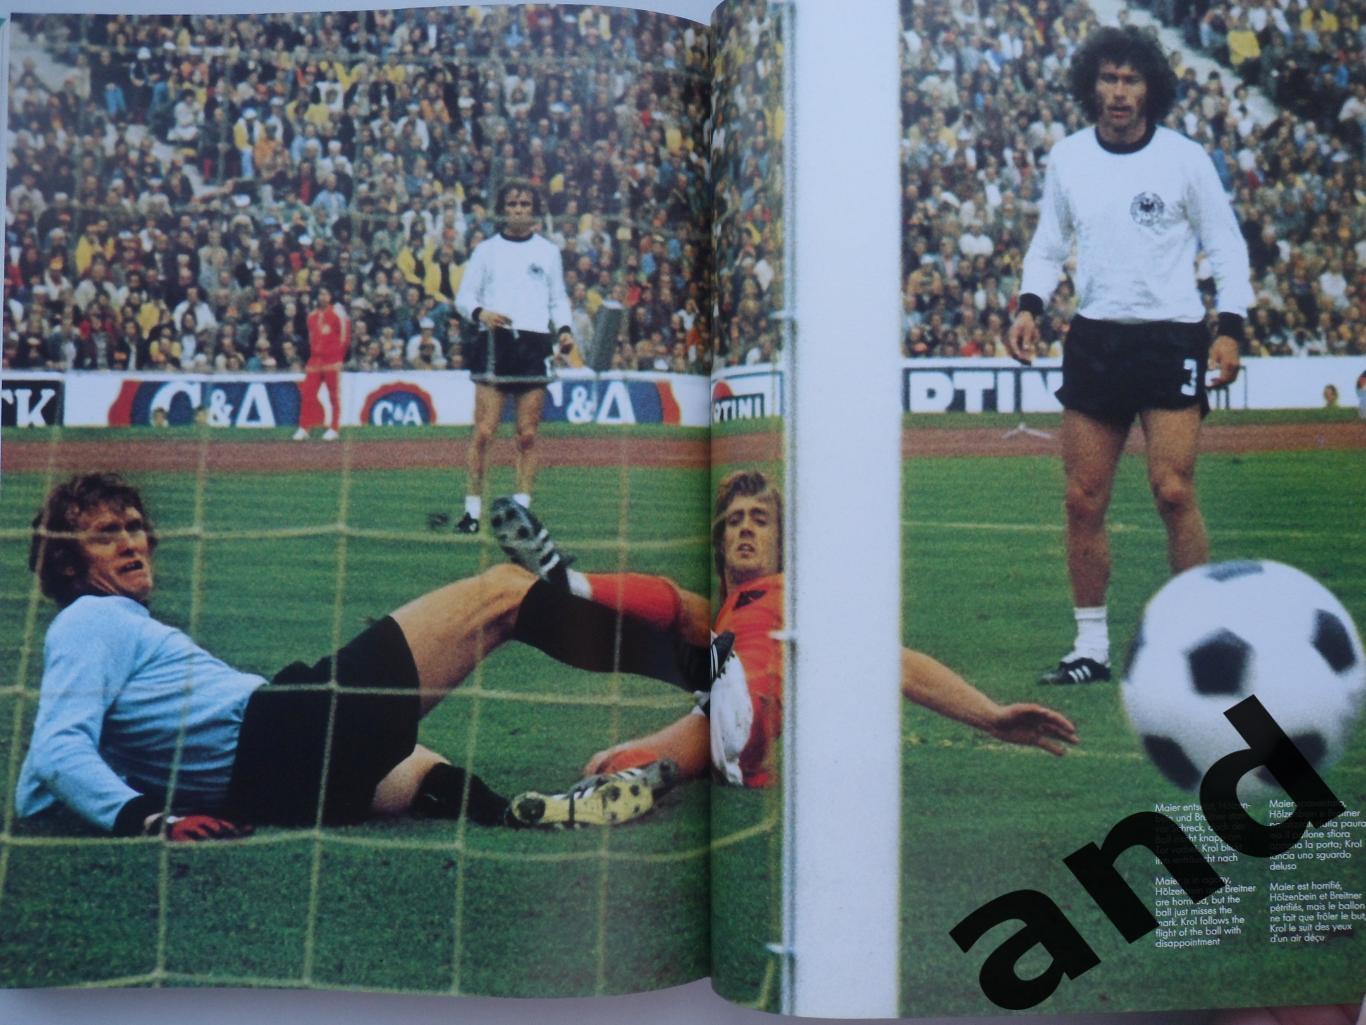 фотоальбом Чемпионат мира по футболу 1974 (384 стр.) 4